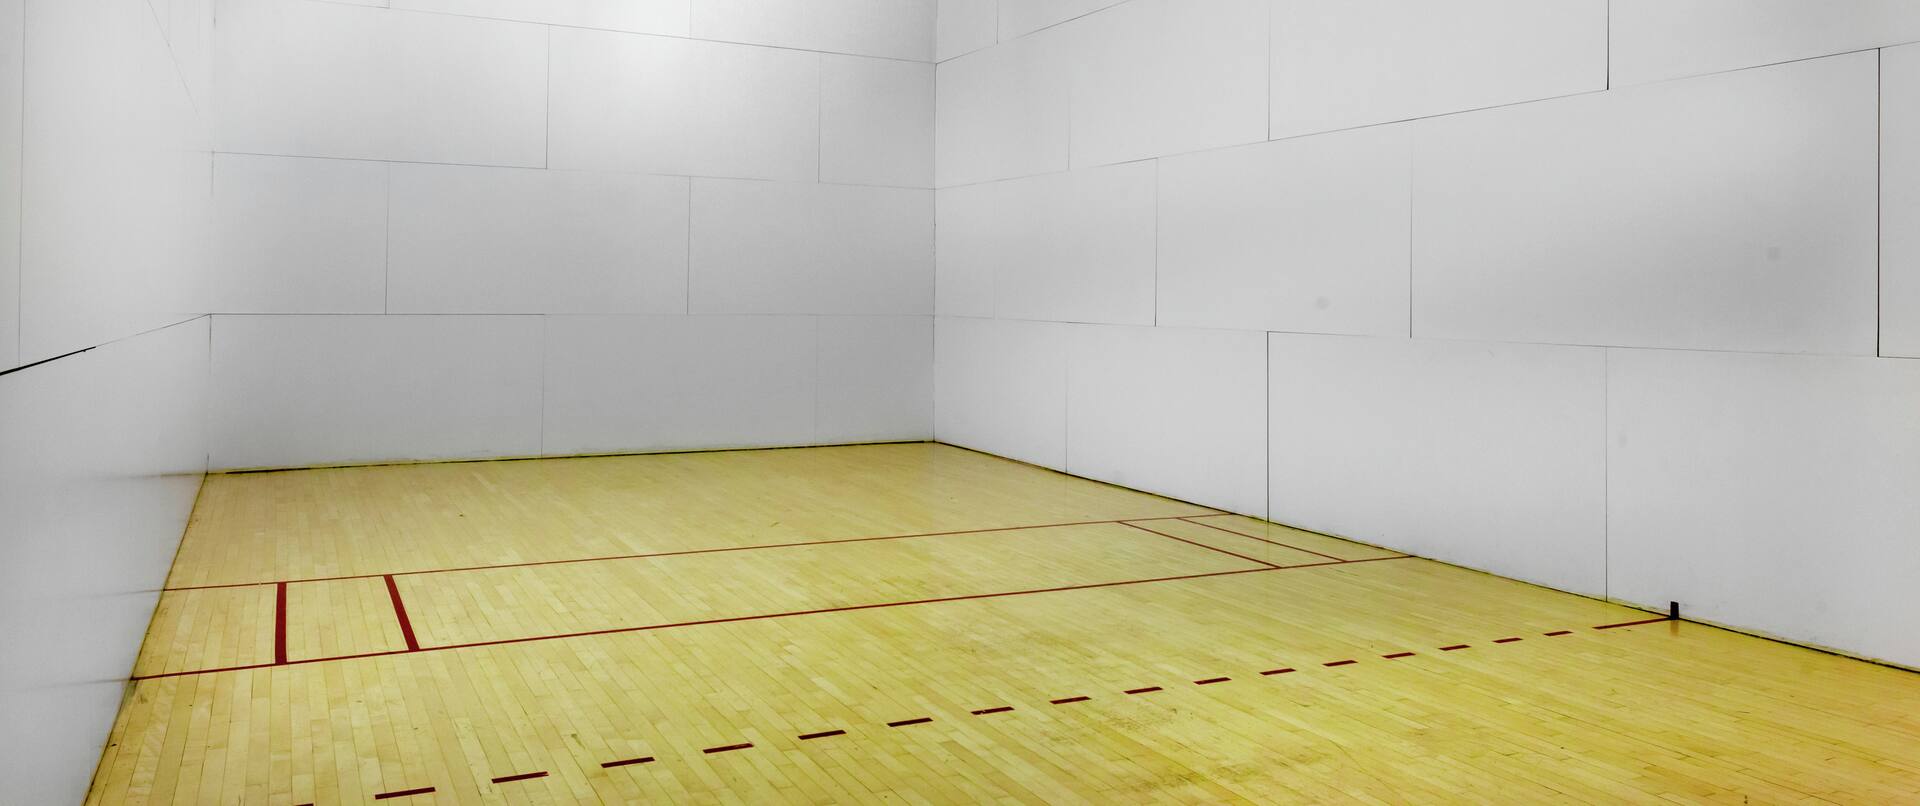 a racquetball court